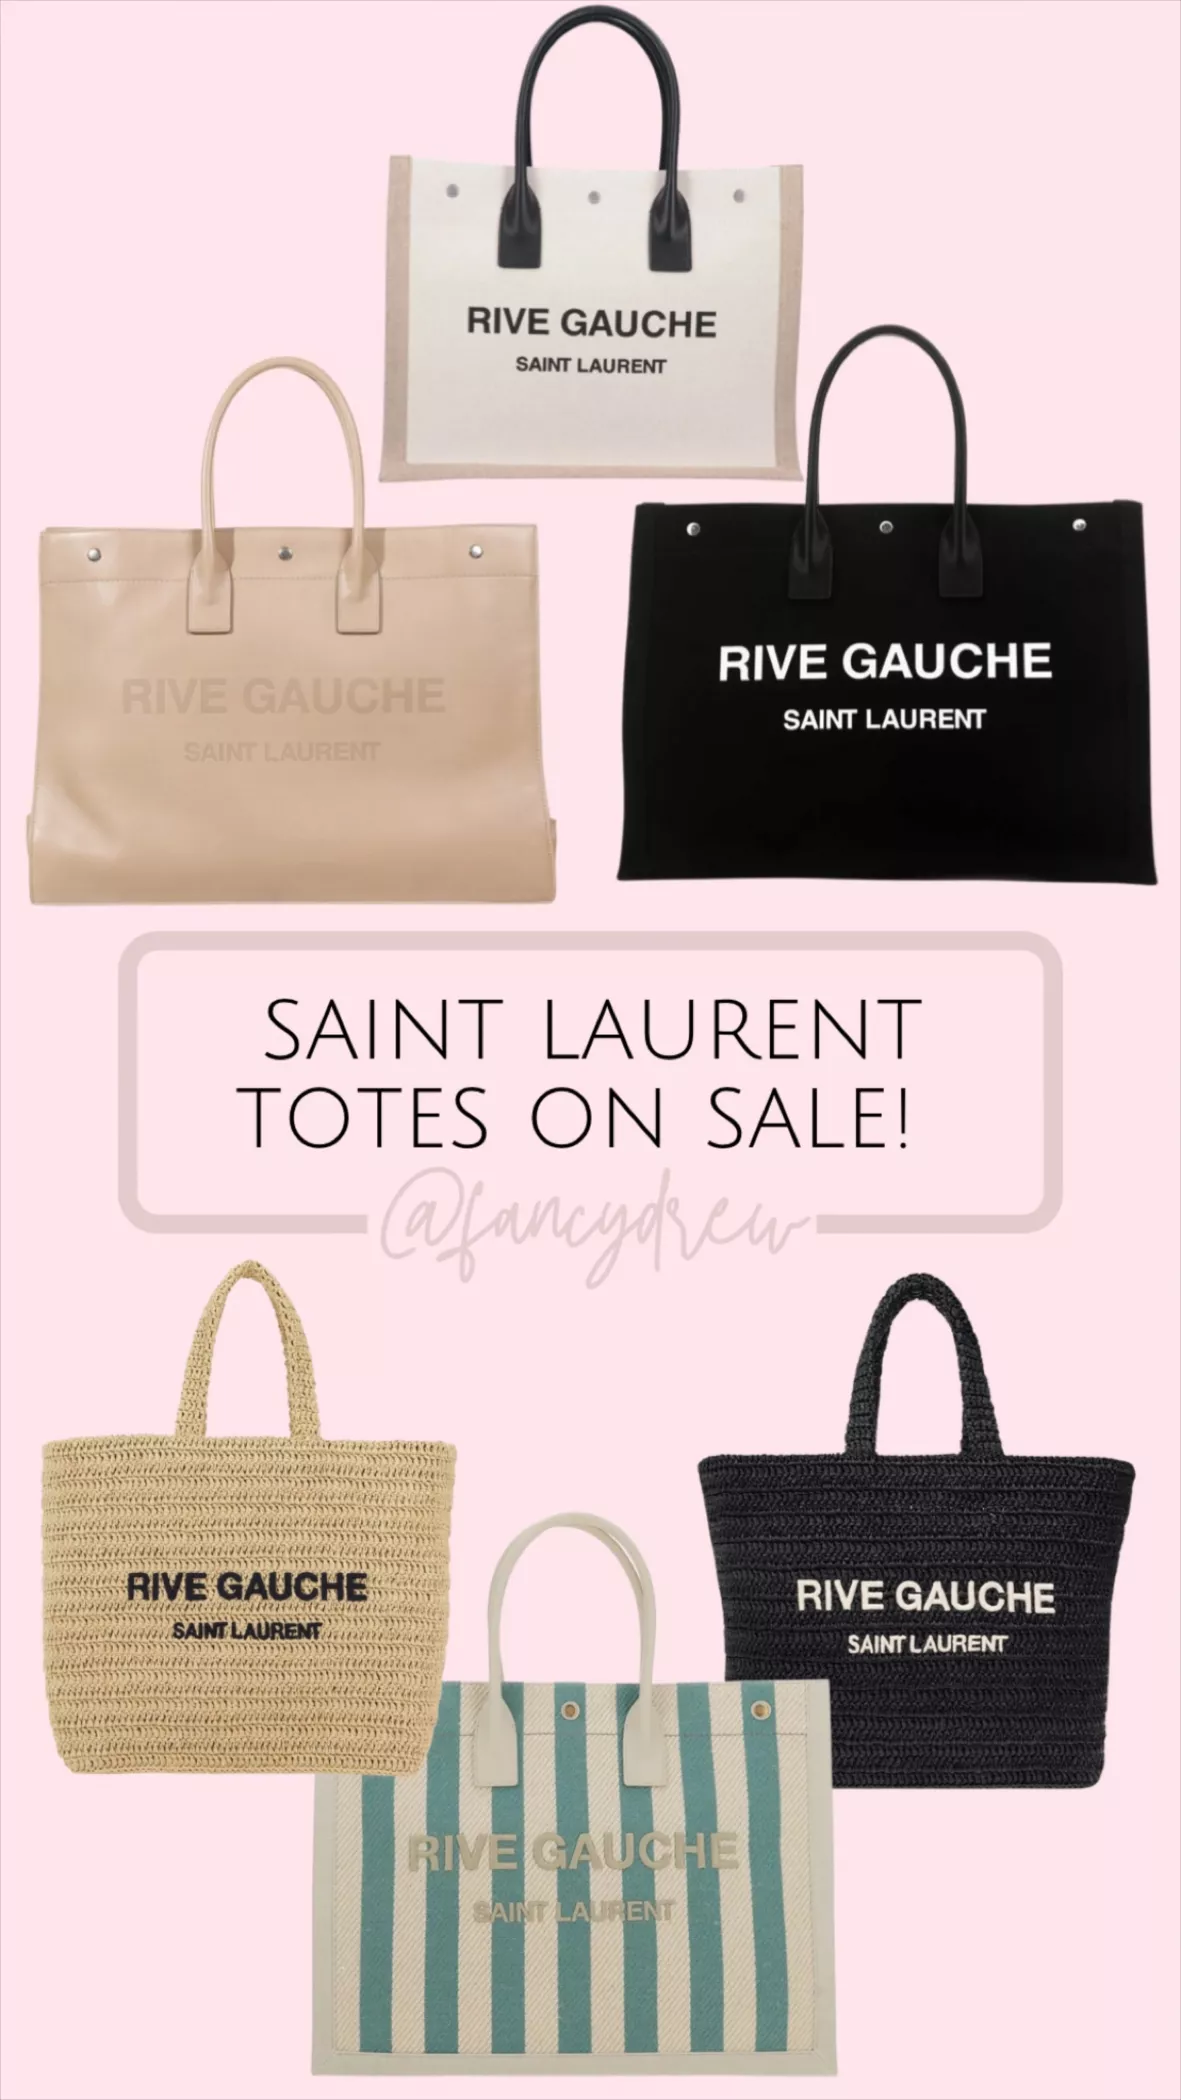 Rive Gauche Saint Laurent Bag Photo Inspo